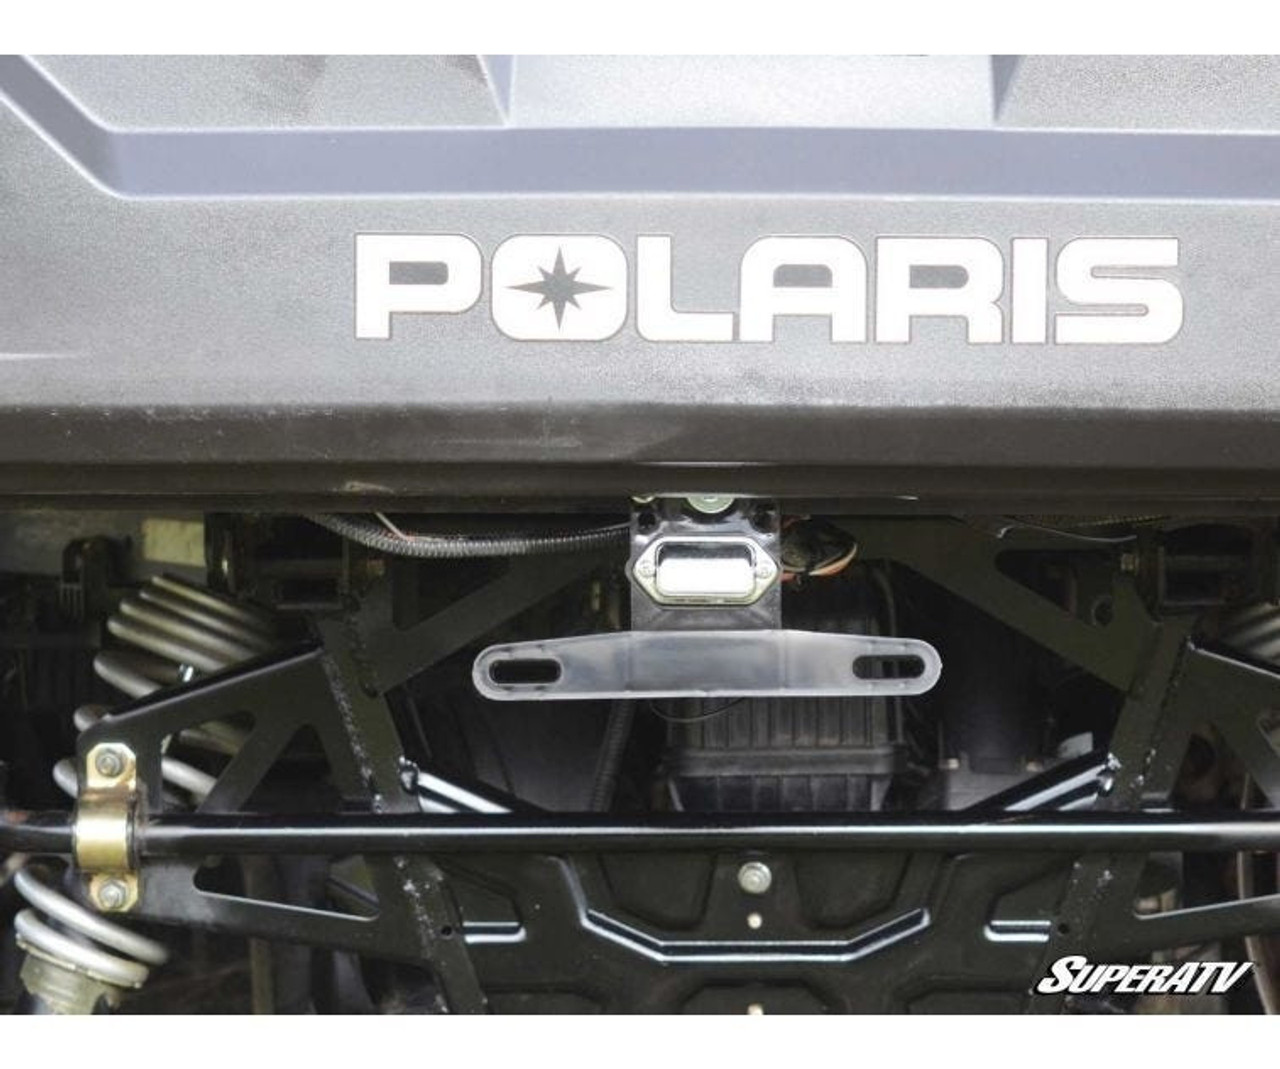 Polaris Ranger Universal Lighted License Plate Holder - SuperATV